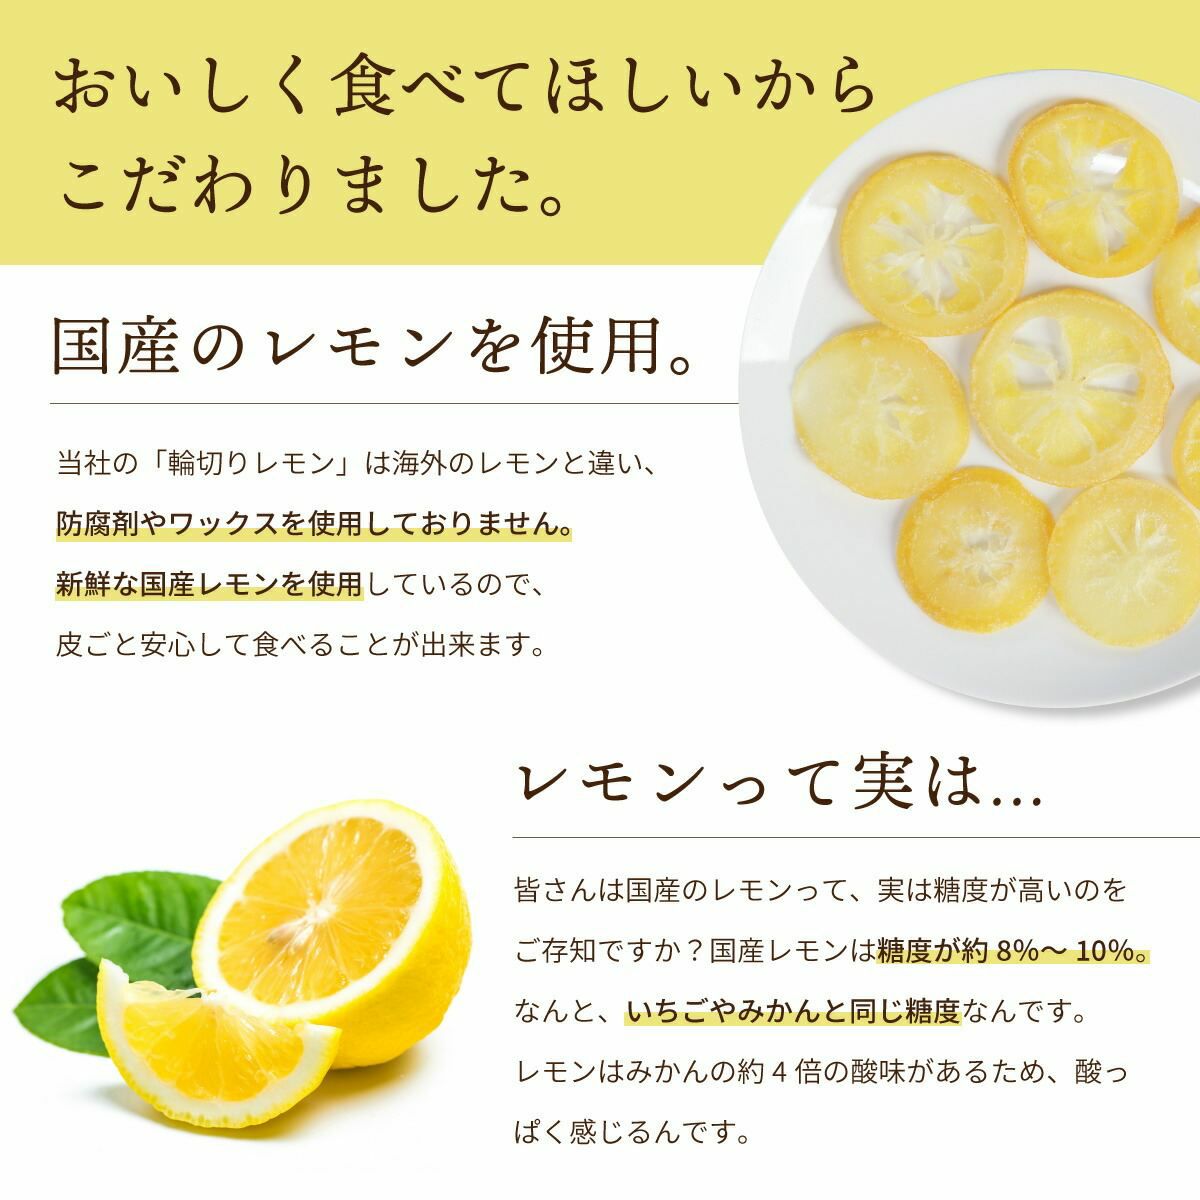 ドライフルーツ 国産 輪切り レモン 500g 特長4